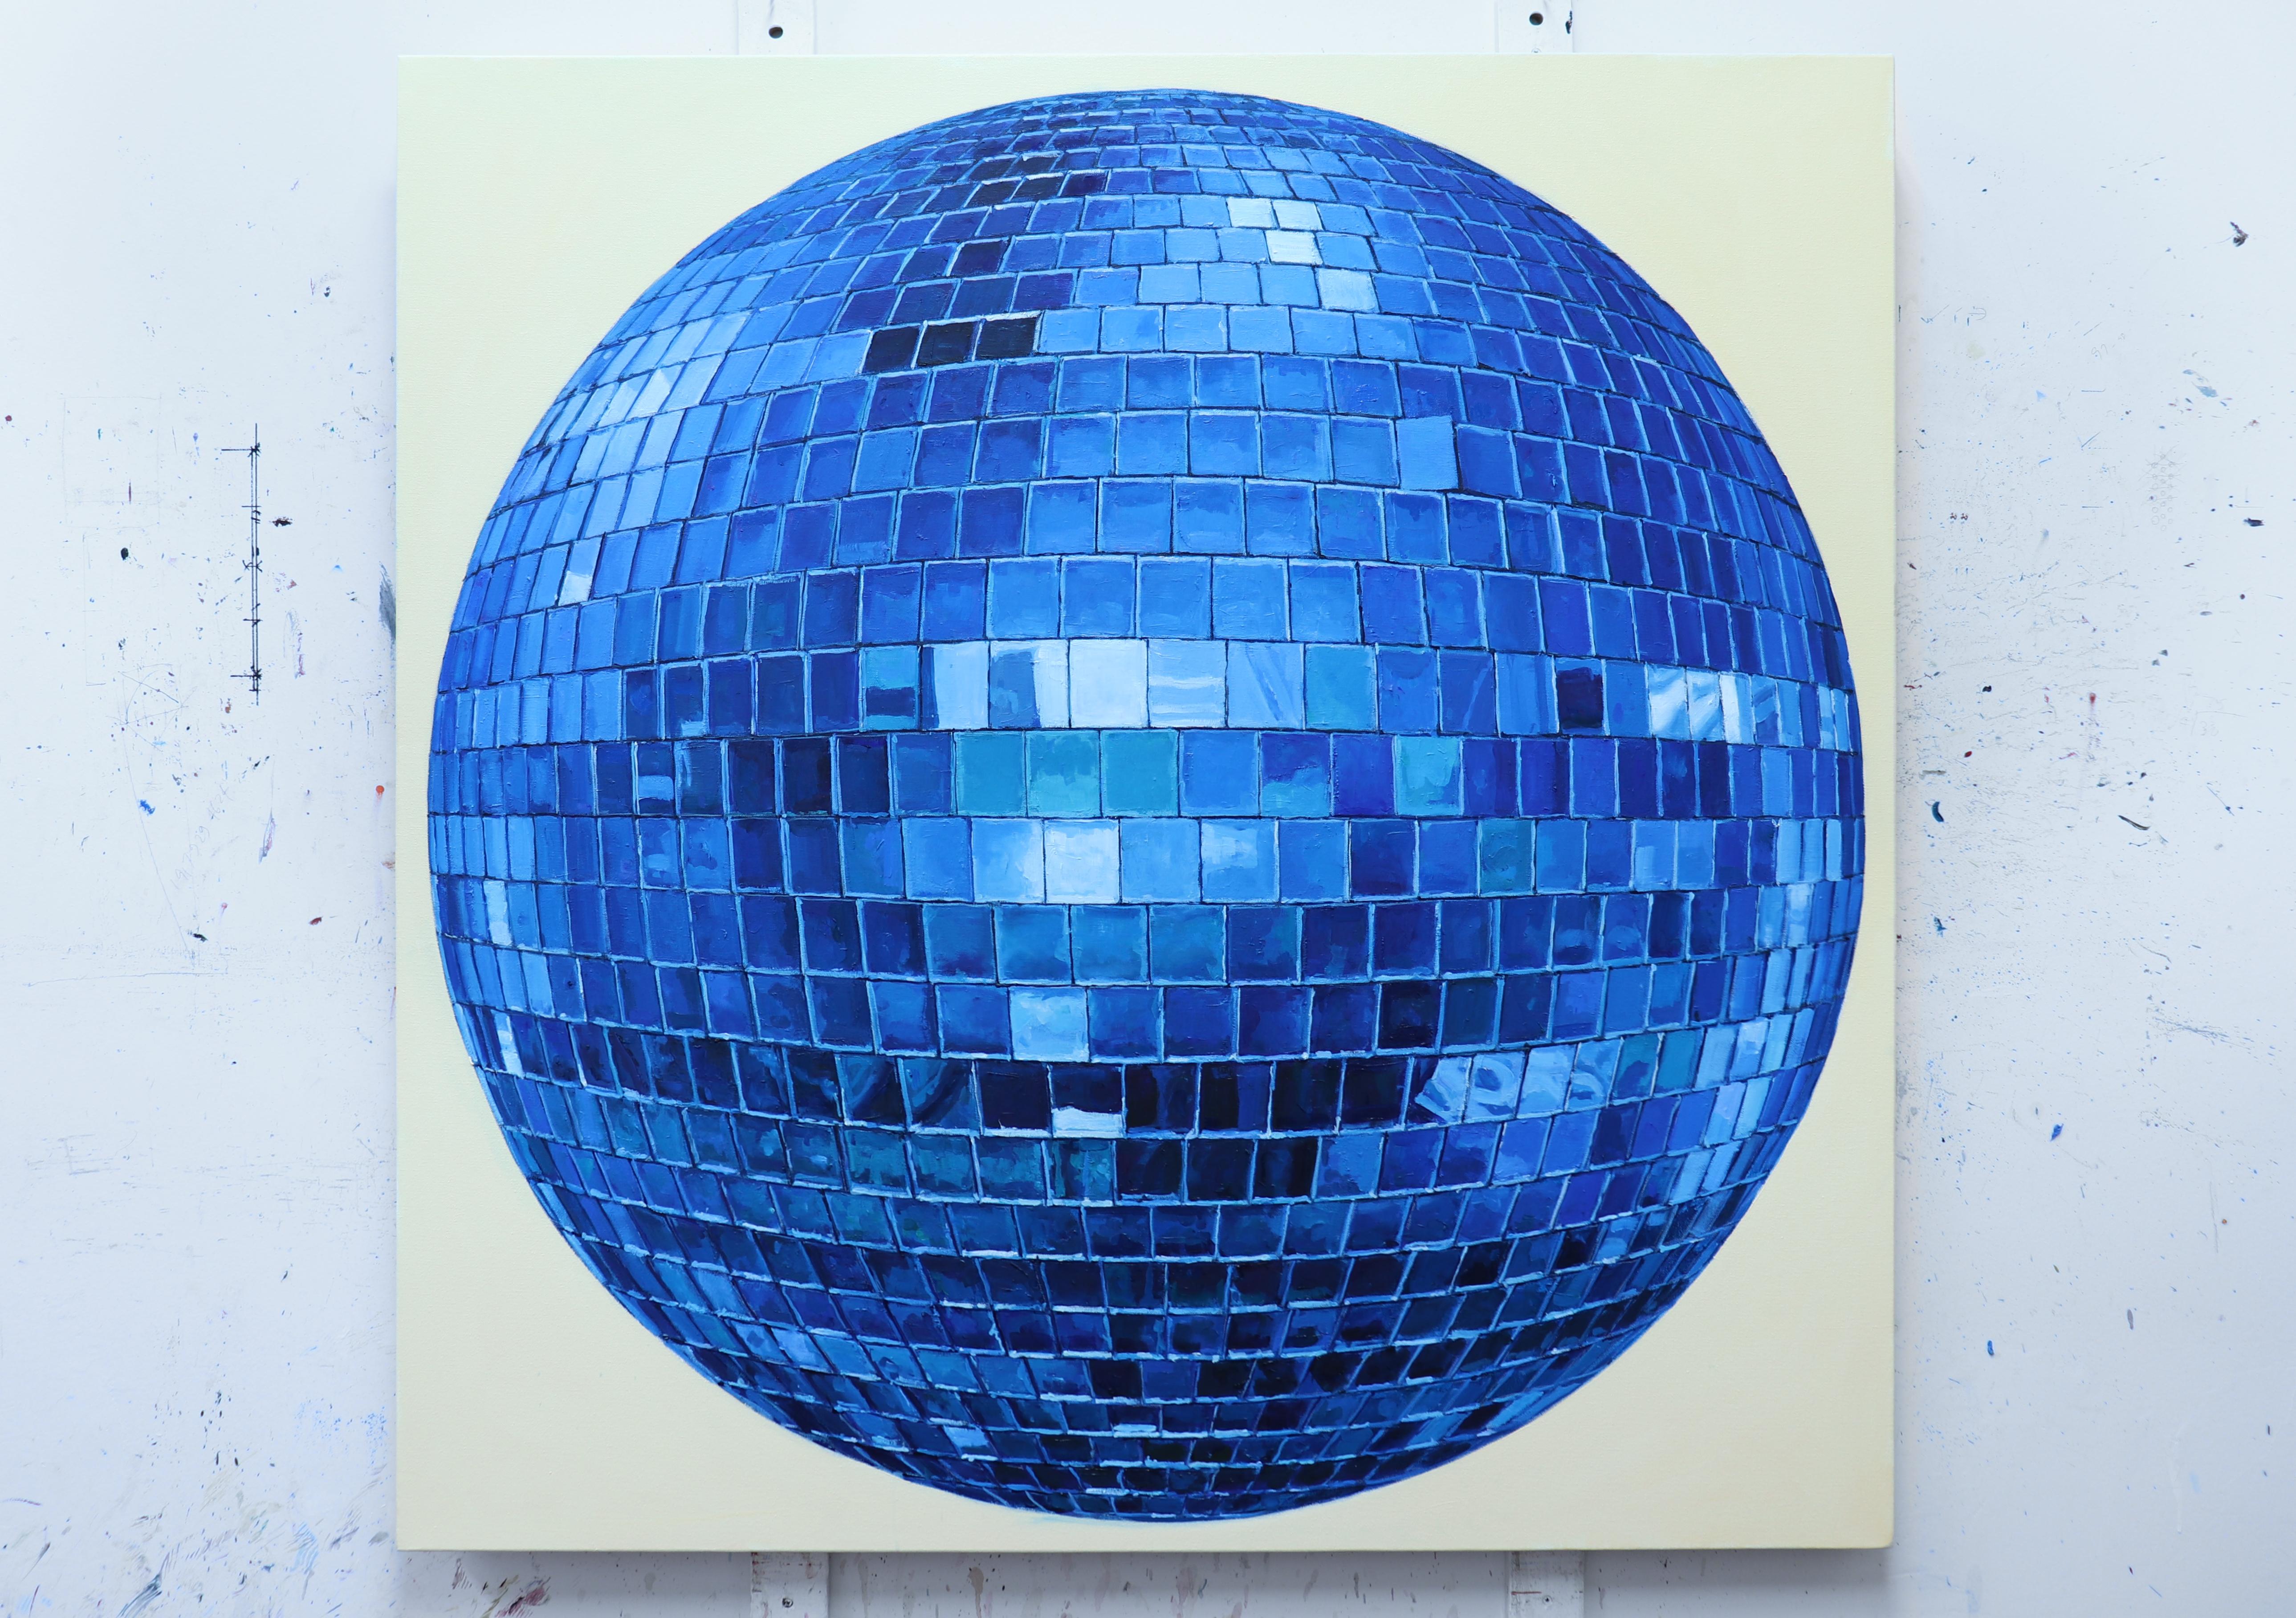 DISCO BALL - Peinture photoréaliste / Image en miroir / Reflections / Cobalt - Contemporain Painting par Richard Combes